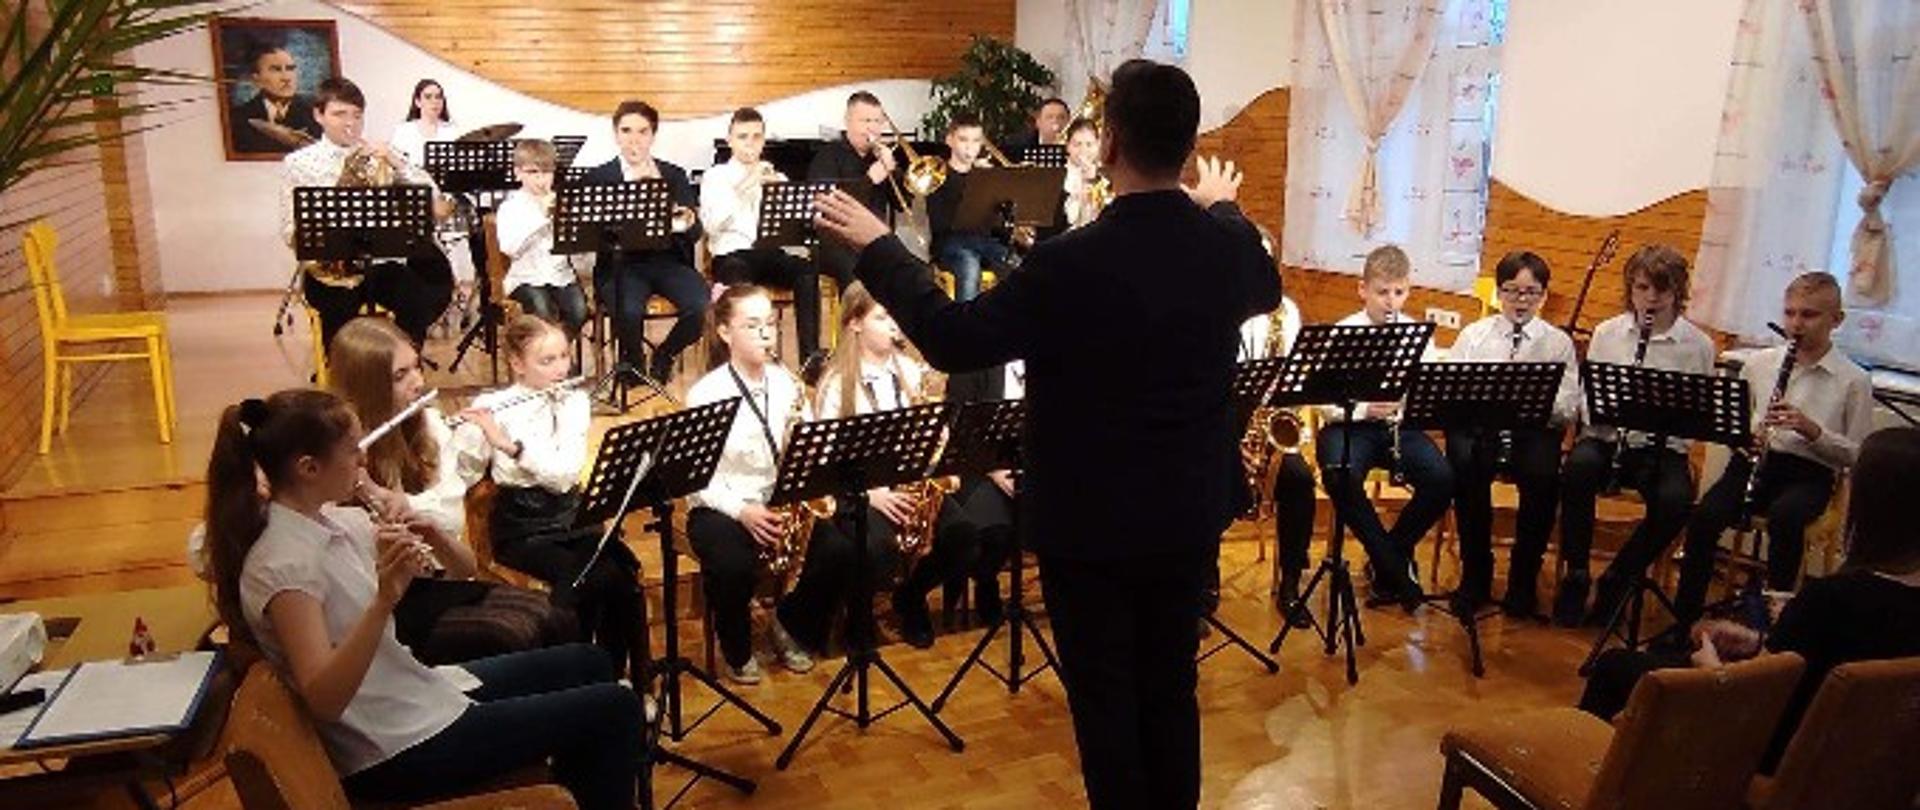 zdjęcie przedstawiające uczniów i dyrygenta orkiestry szkolnej na scenie